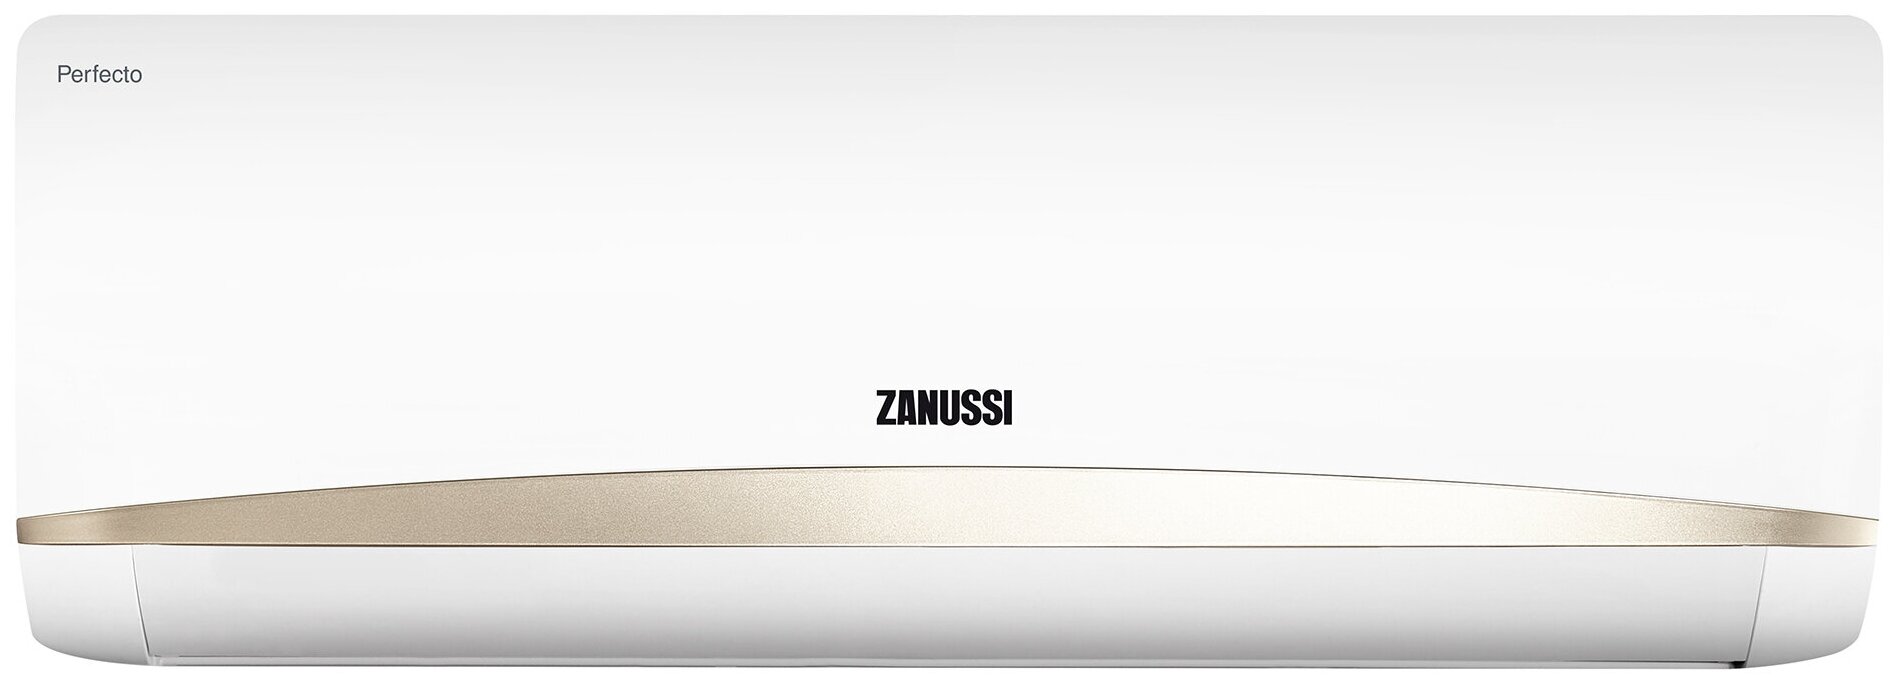 Сплит-система Zanussi Perfecto ZACS-07 HPF/A22/N1 Комплект - фотография № 2